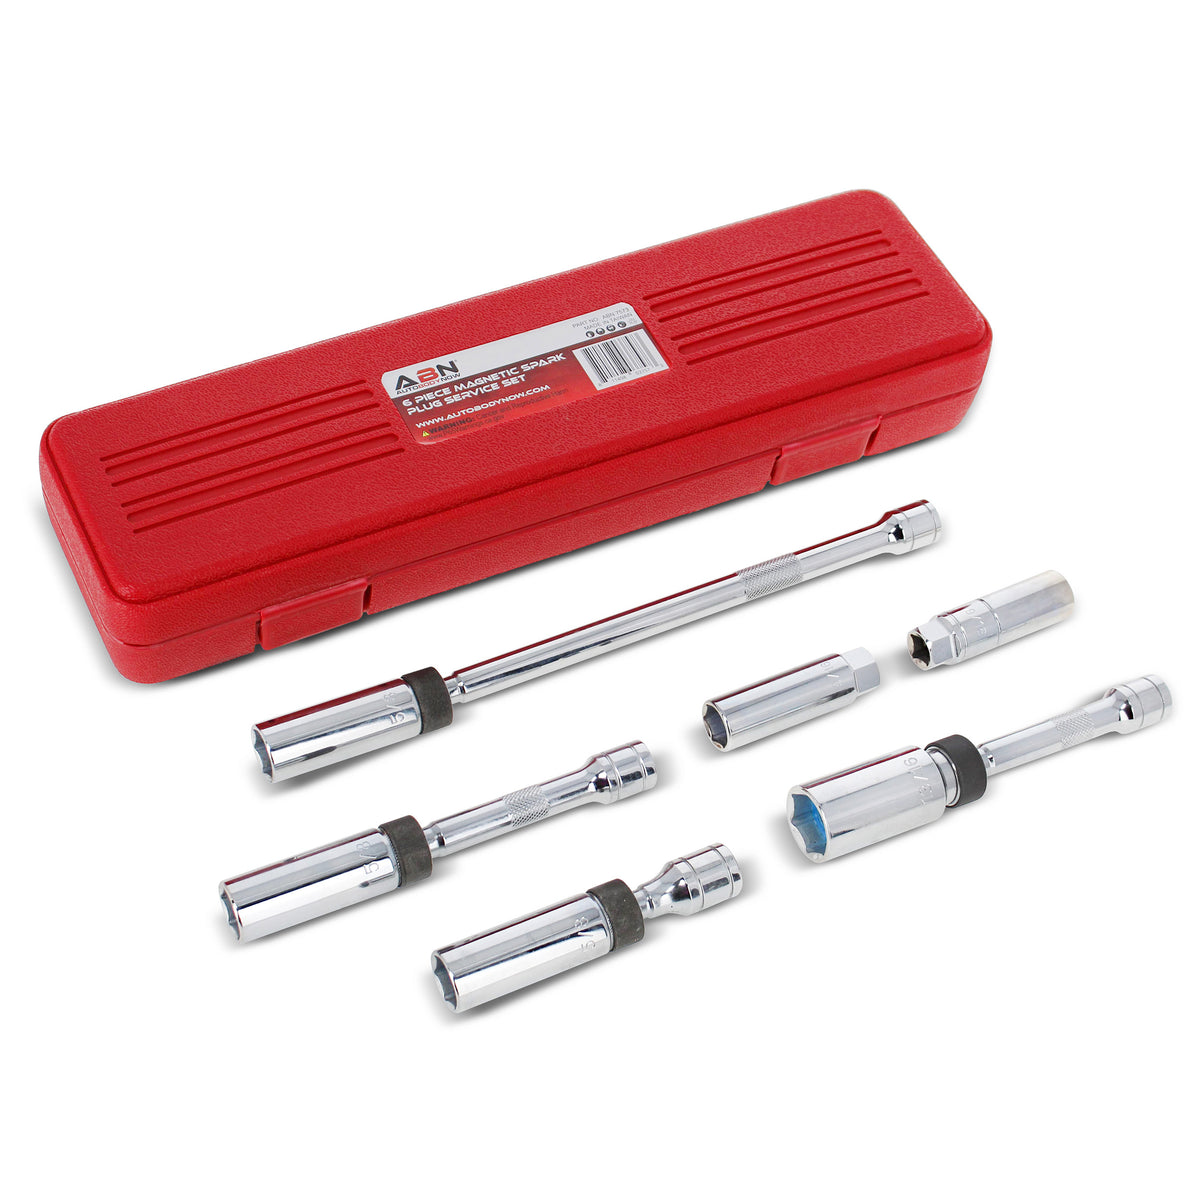 Spark Plug Socket Set – 6 Piece 3/8” Inch Drive Magnetic Socket Set